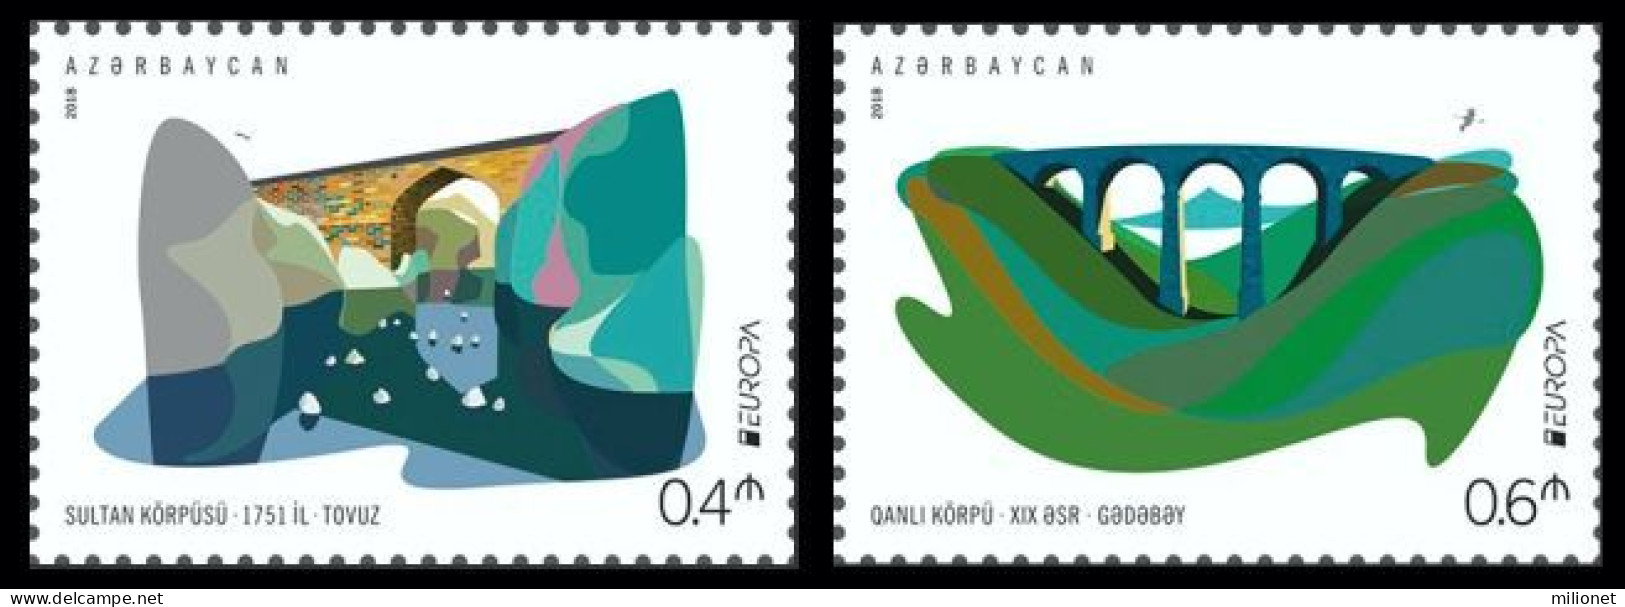 SALE!!! AZERBAYAN AZERBAIJAN AZERBAÏDJAN ASERBAIDSCHAN 2018 EUROPA CEPT BRIDGES Set Of 2 Stamps MNH ** - 2018